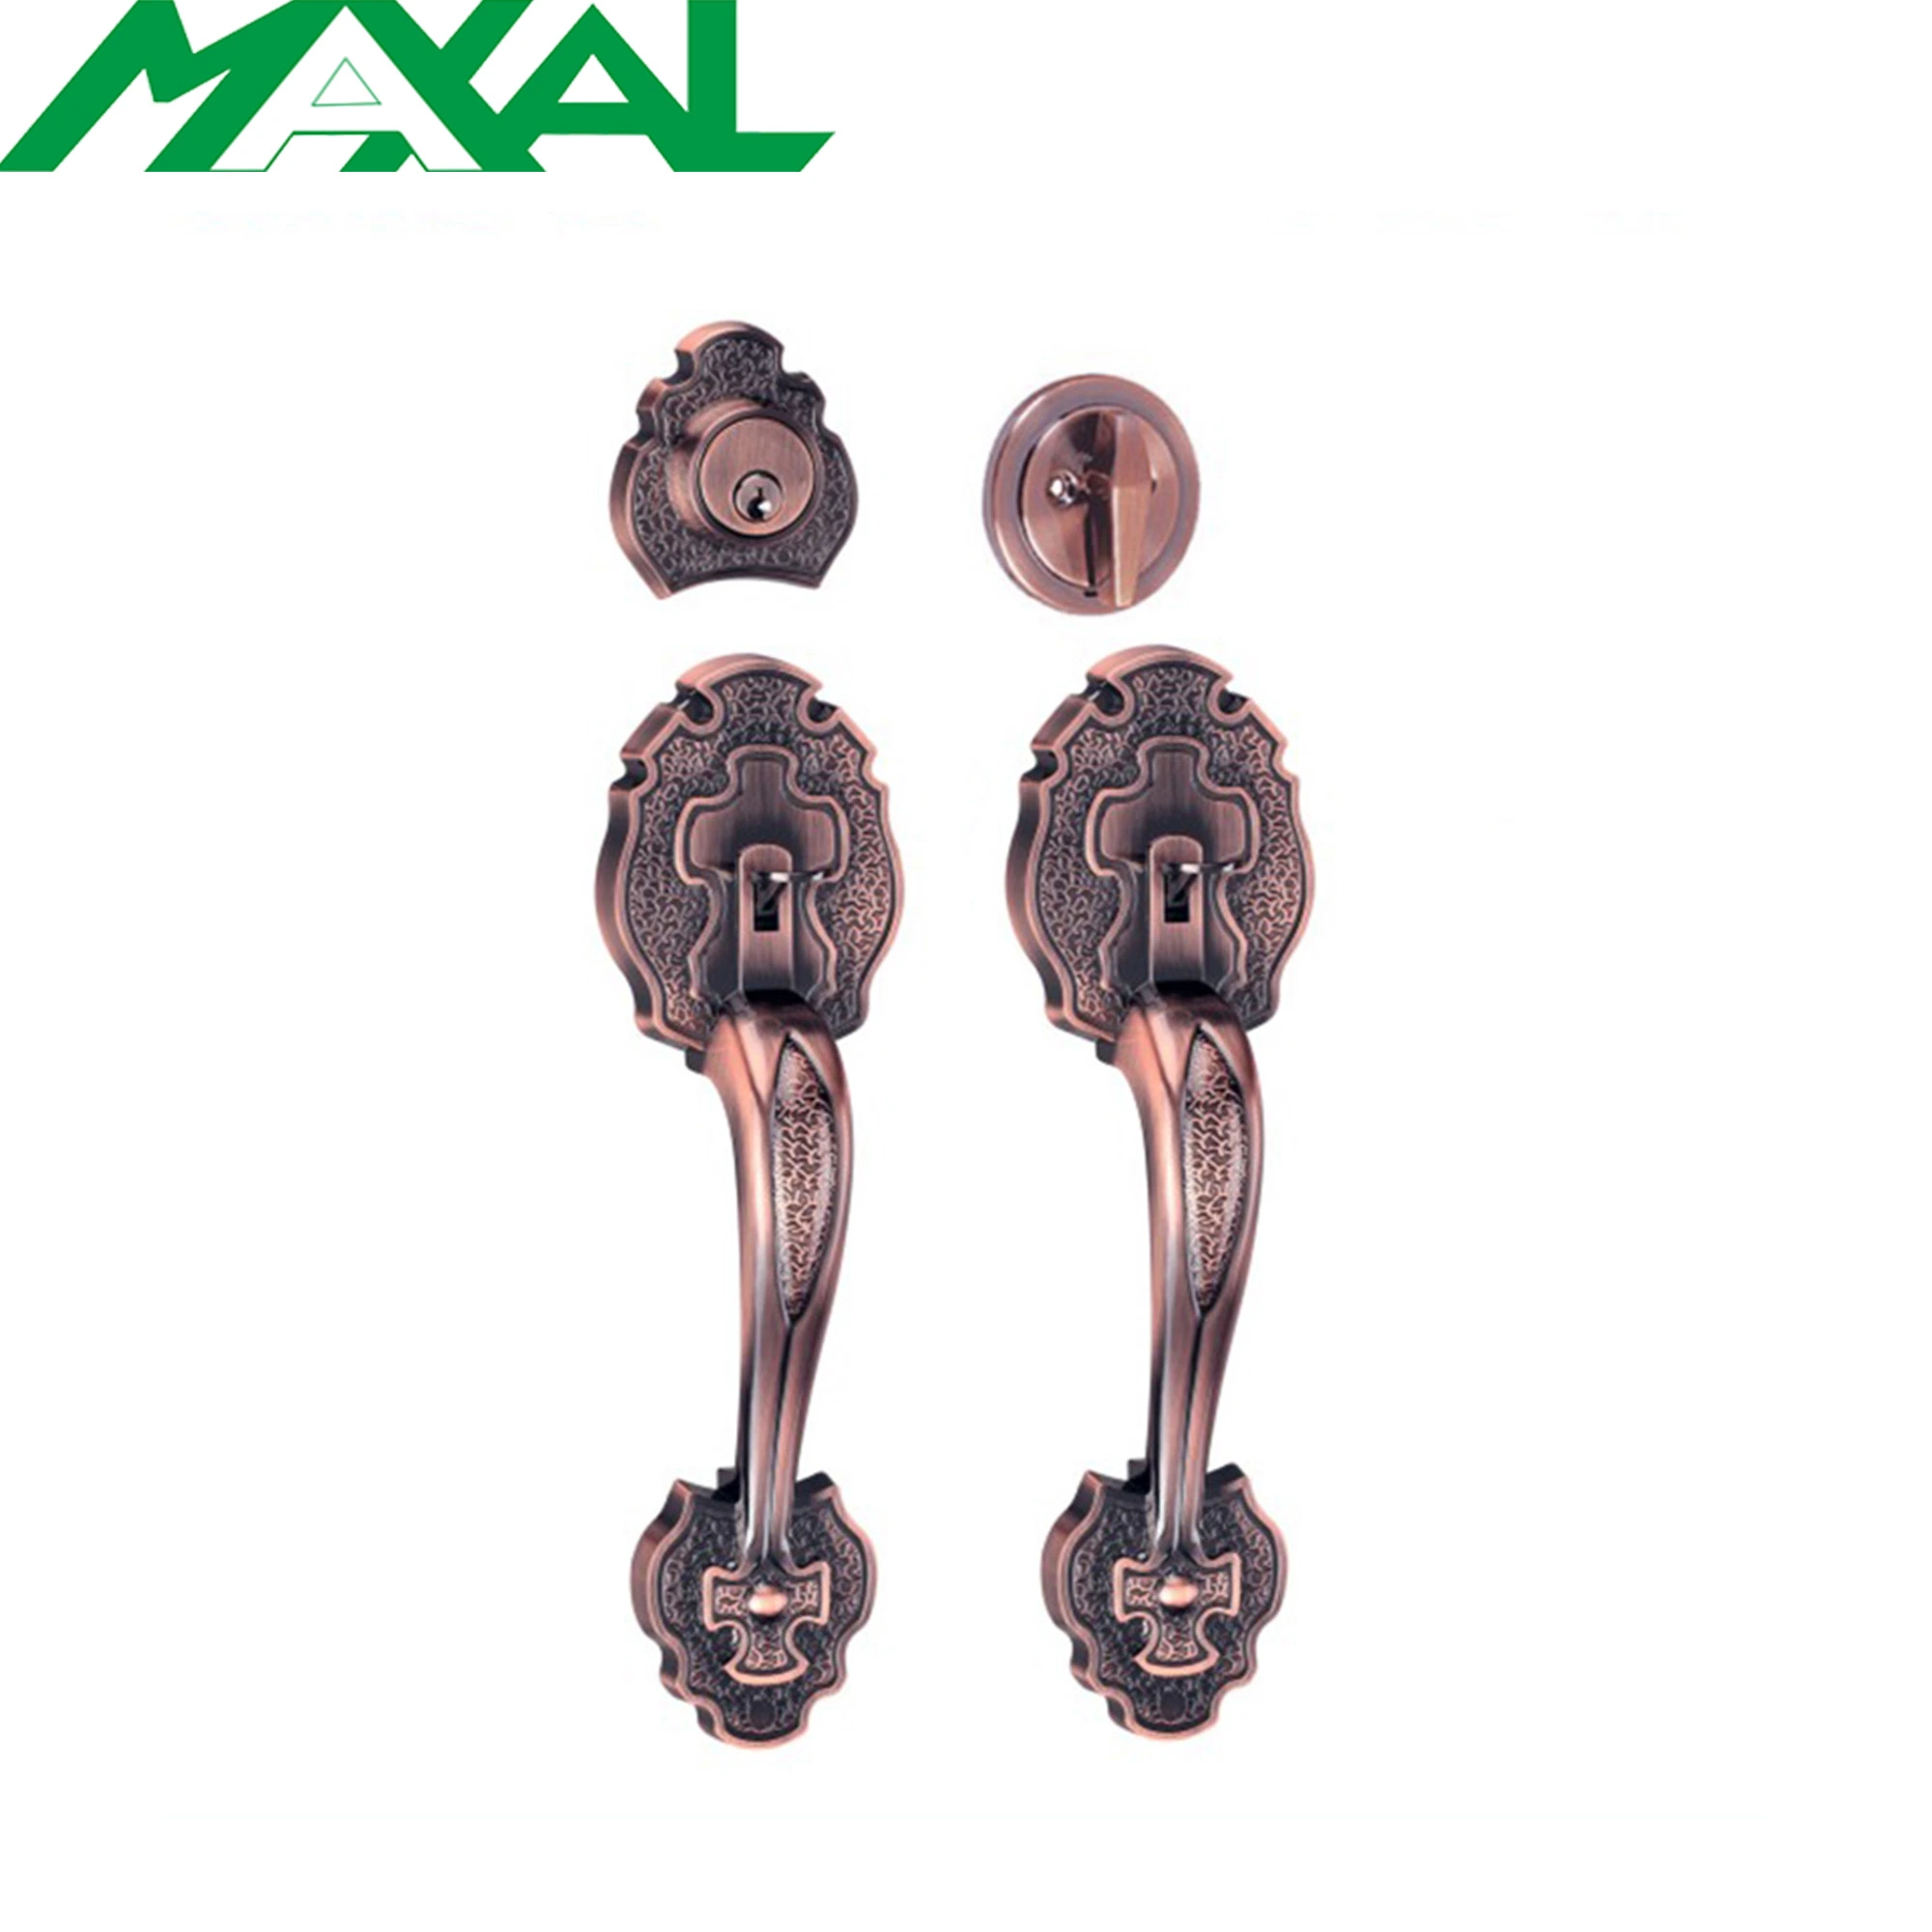 Maxal Handle Lock, Grip Handle Lockset, Door Hardware